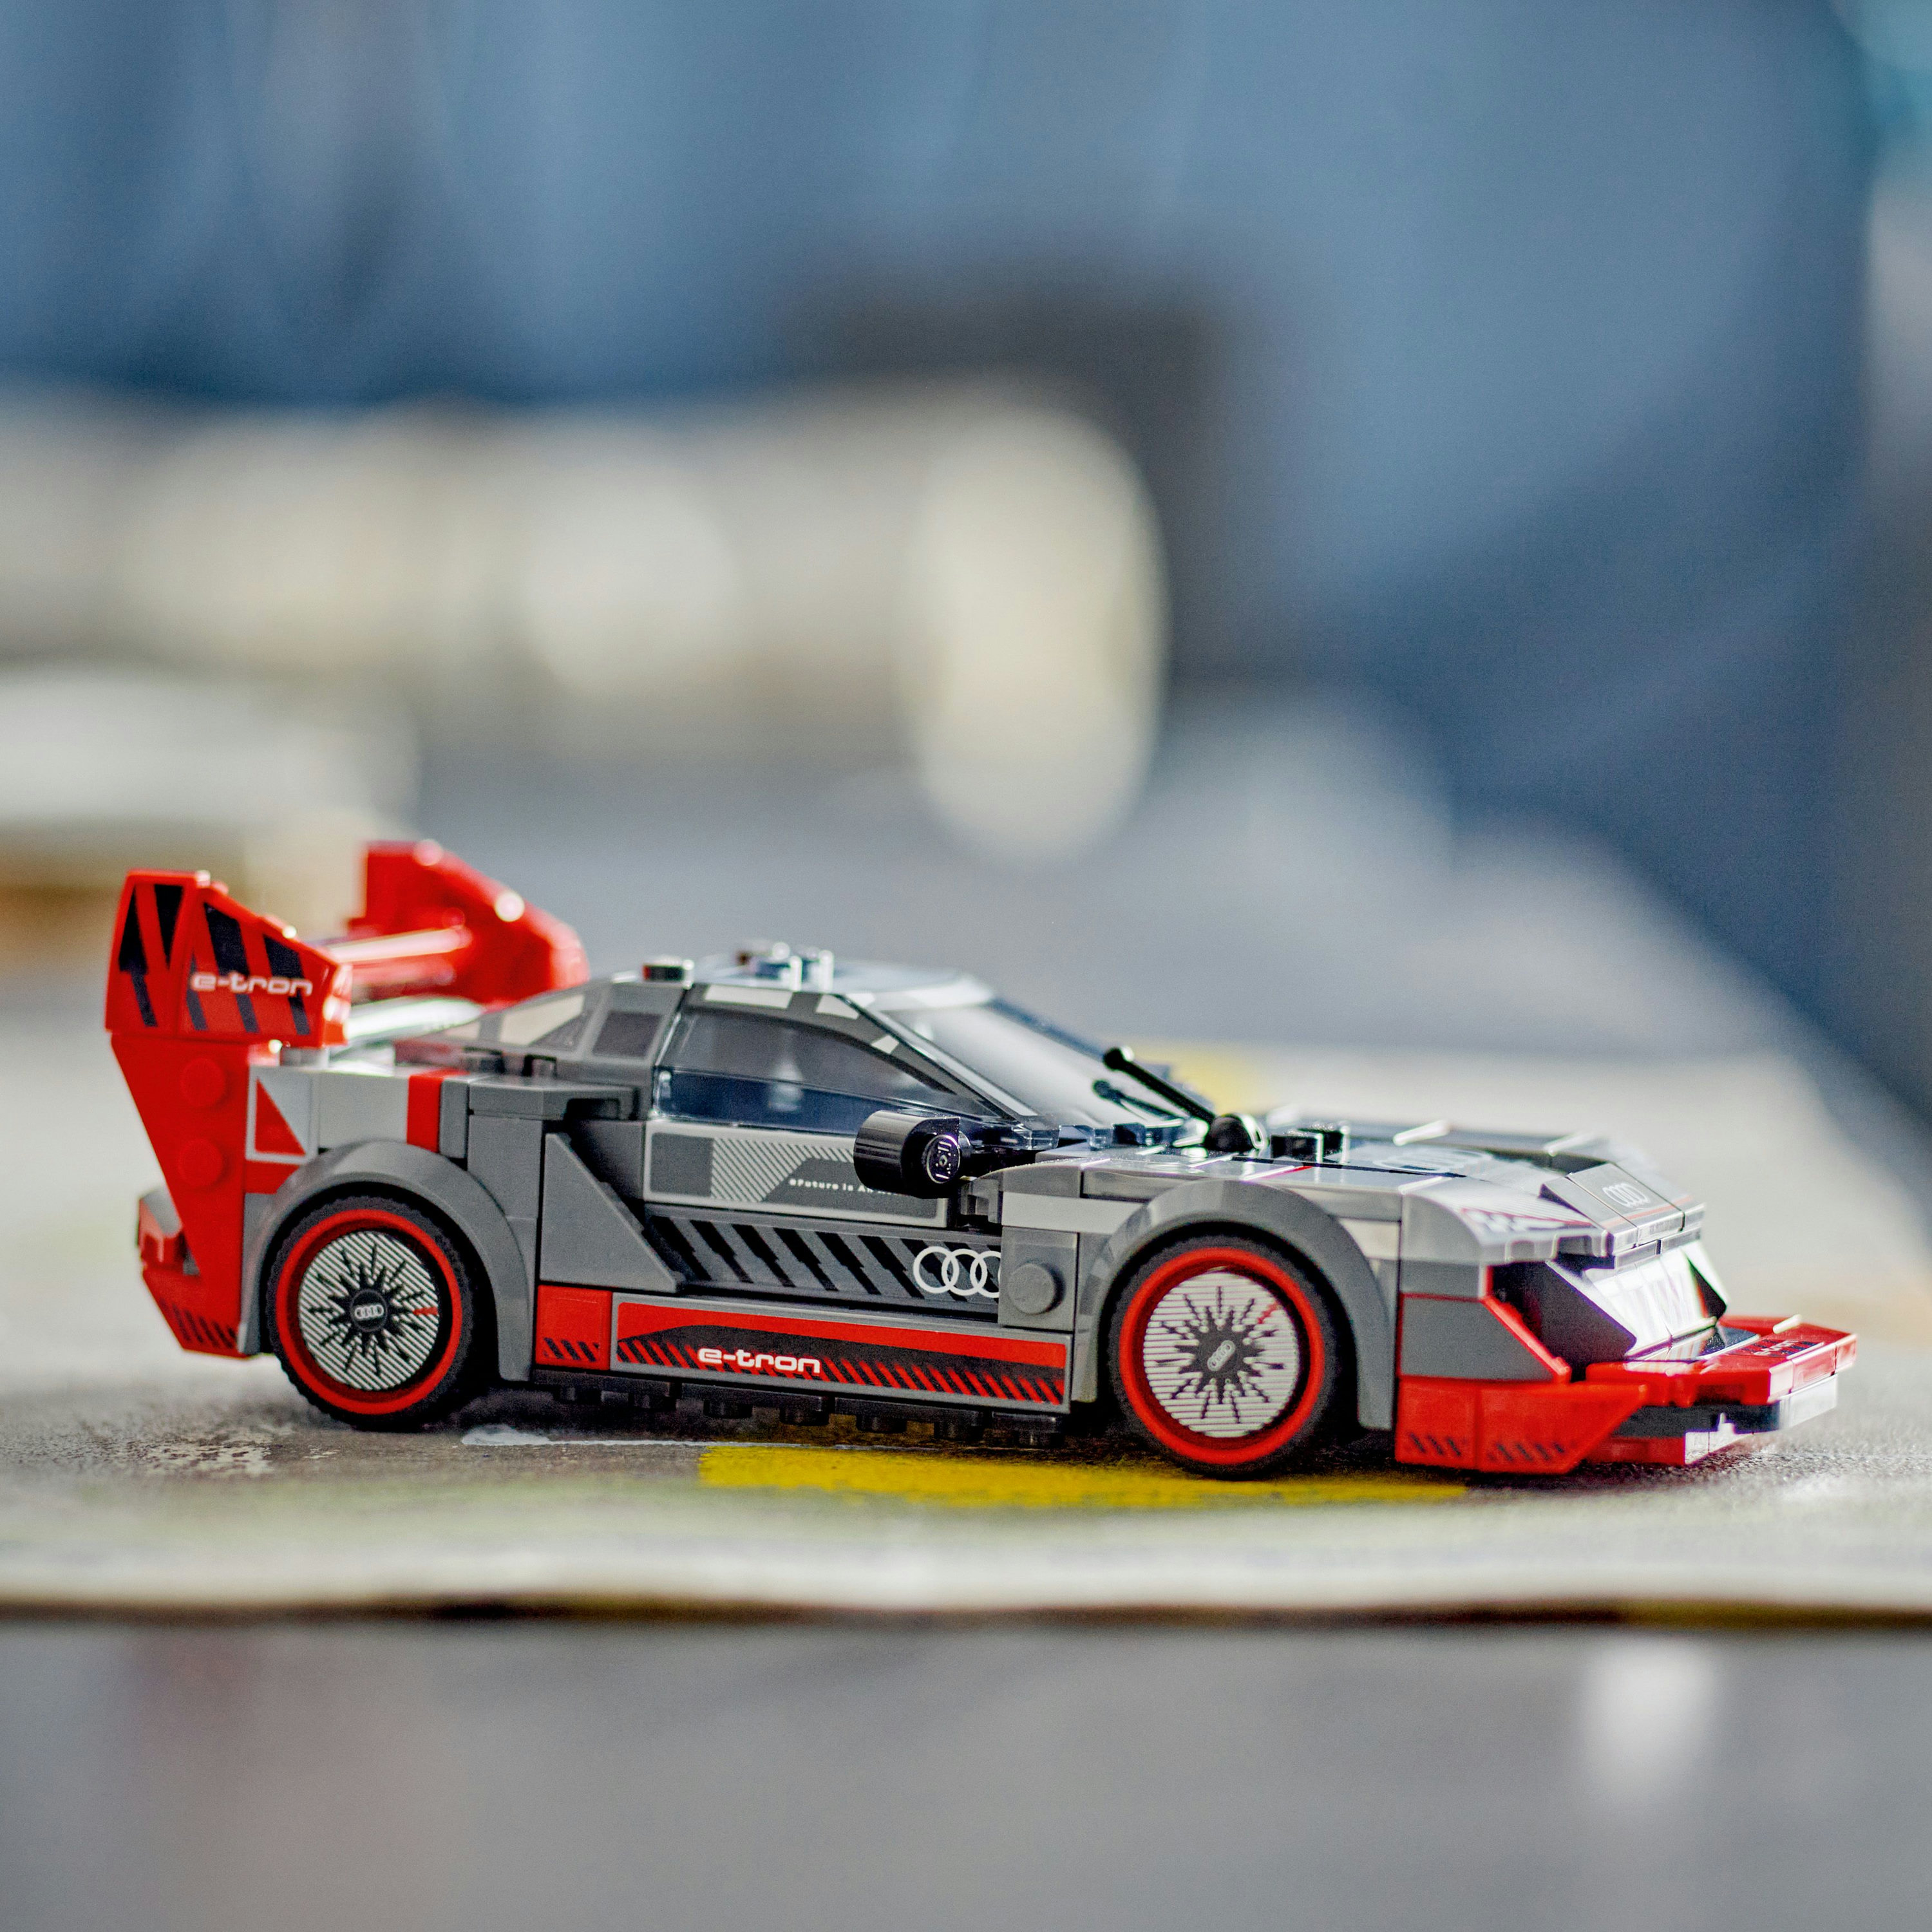 Конструктор LEGO Speed Champions Автомобіль для перегонів Audi S1 e-tron quattro 274 деталі (76921) - фото 5